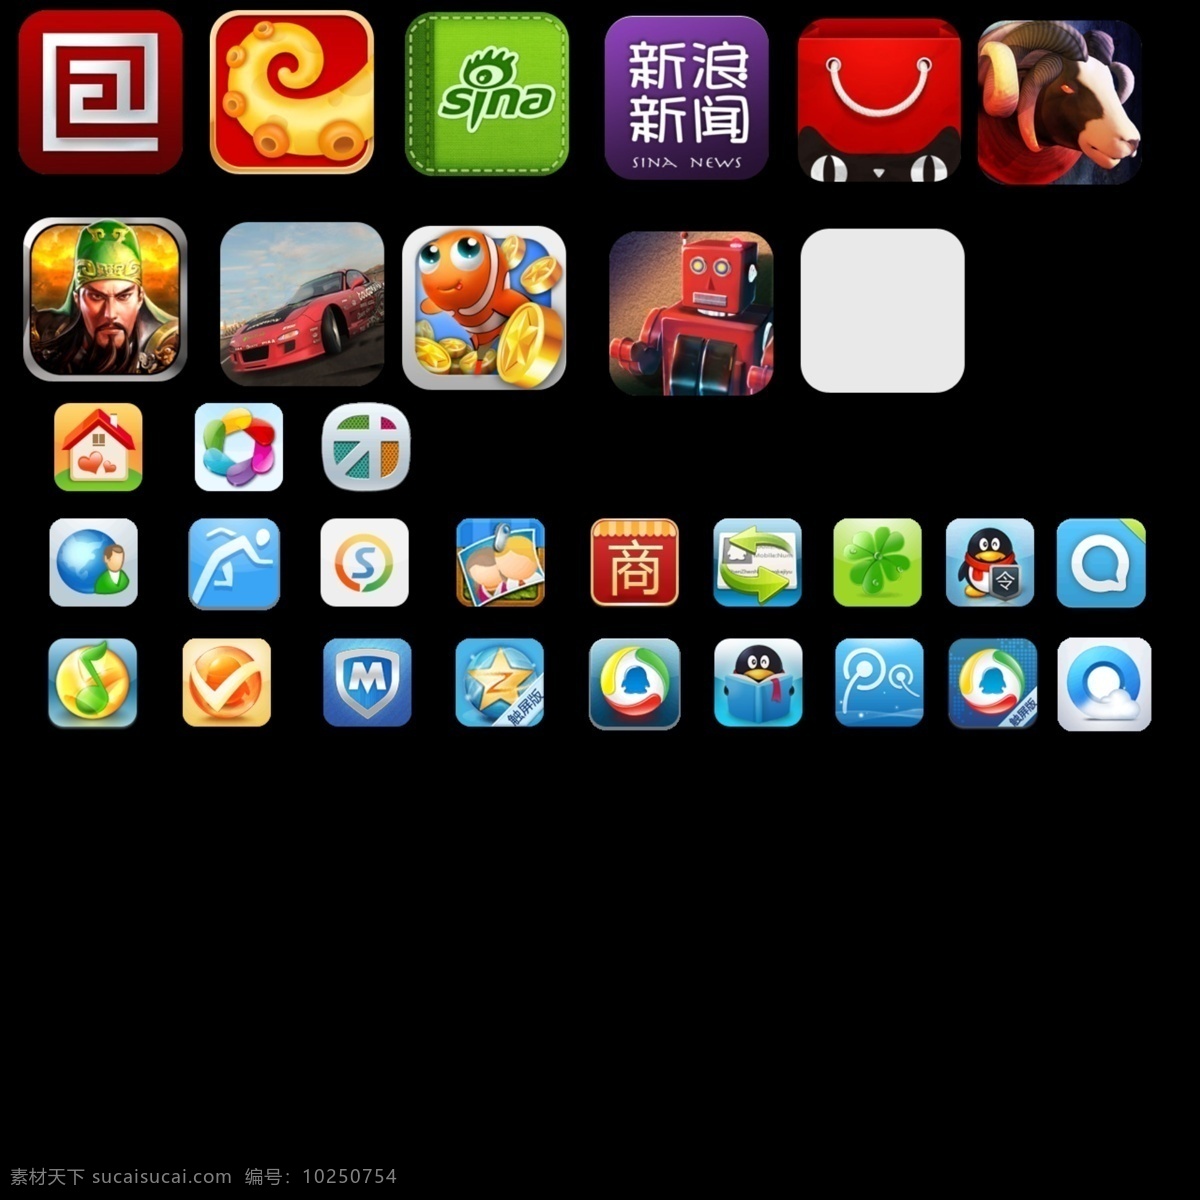 app icons iphone 苹果图标 其他模板 图标 网页模板 微博 收集 模板下载 图标收集 新浪 腾讯图标 新浪图标 游戏图标 源文件 手机